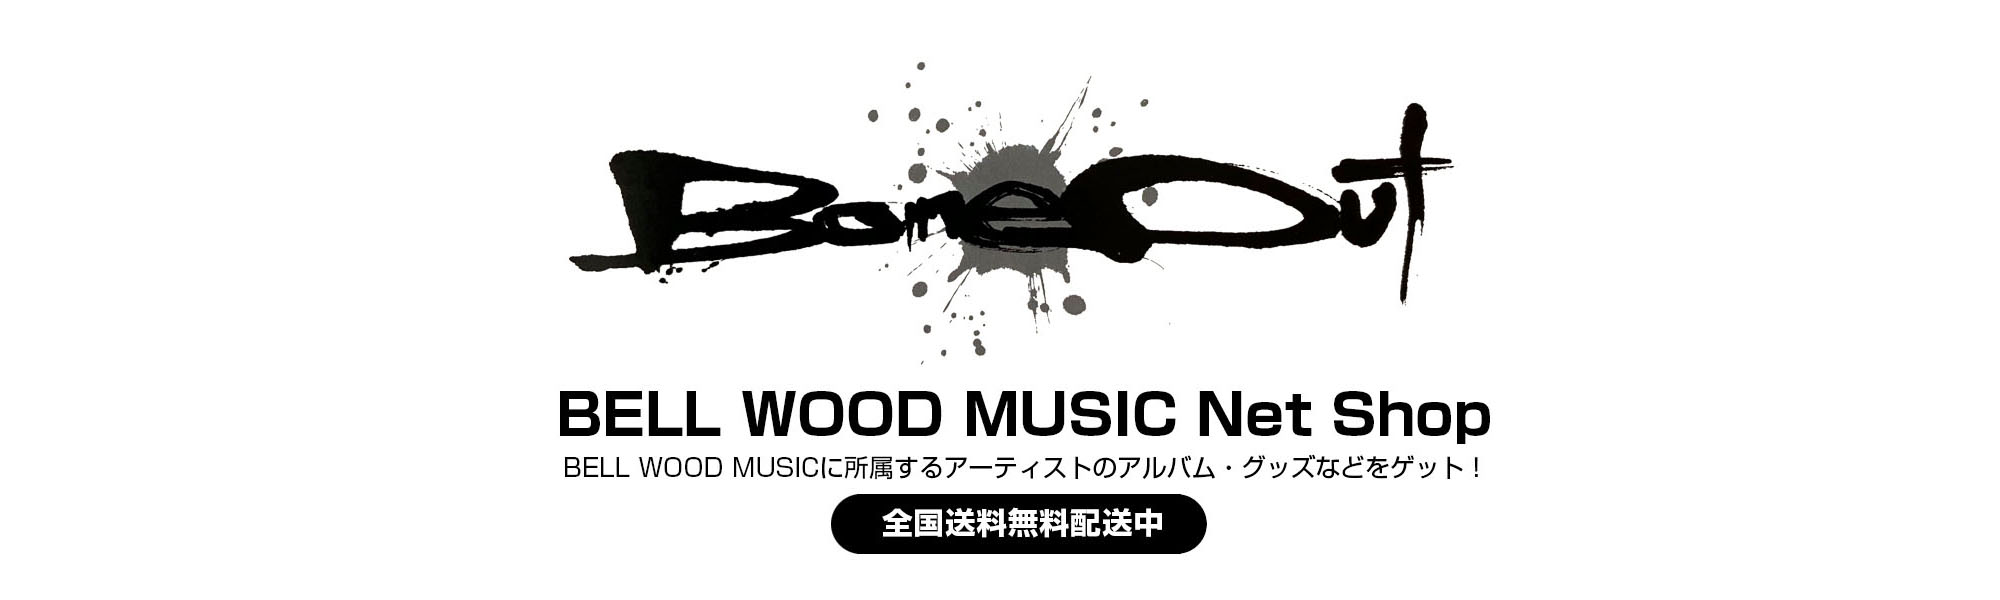 
BELL WOOD MUSIC Net Shop